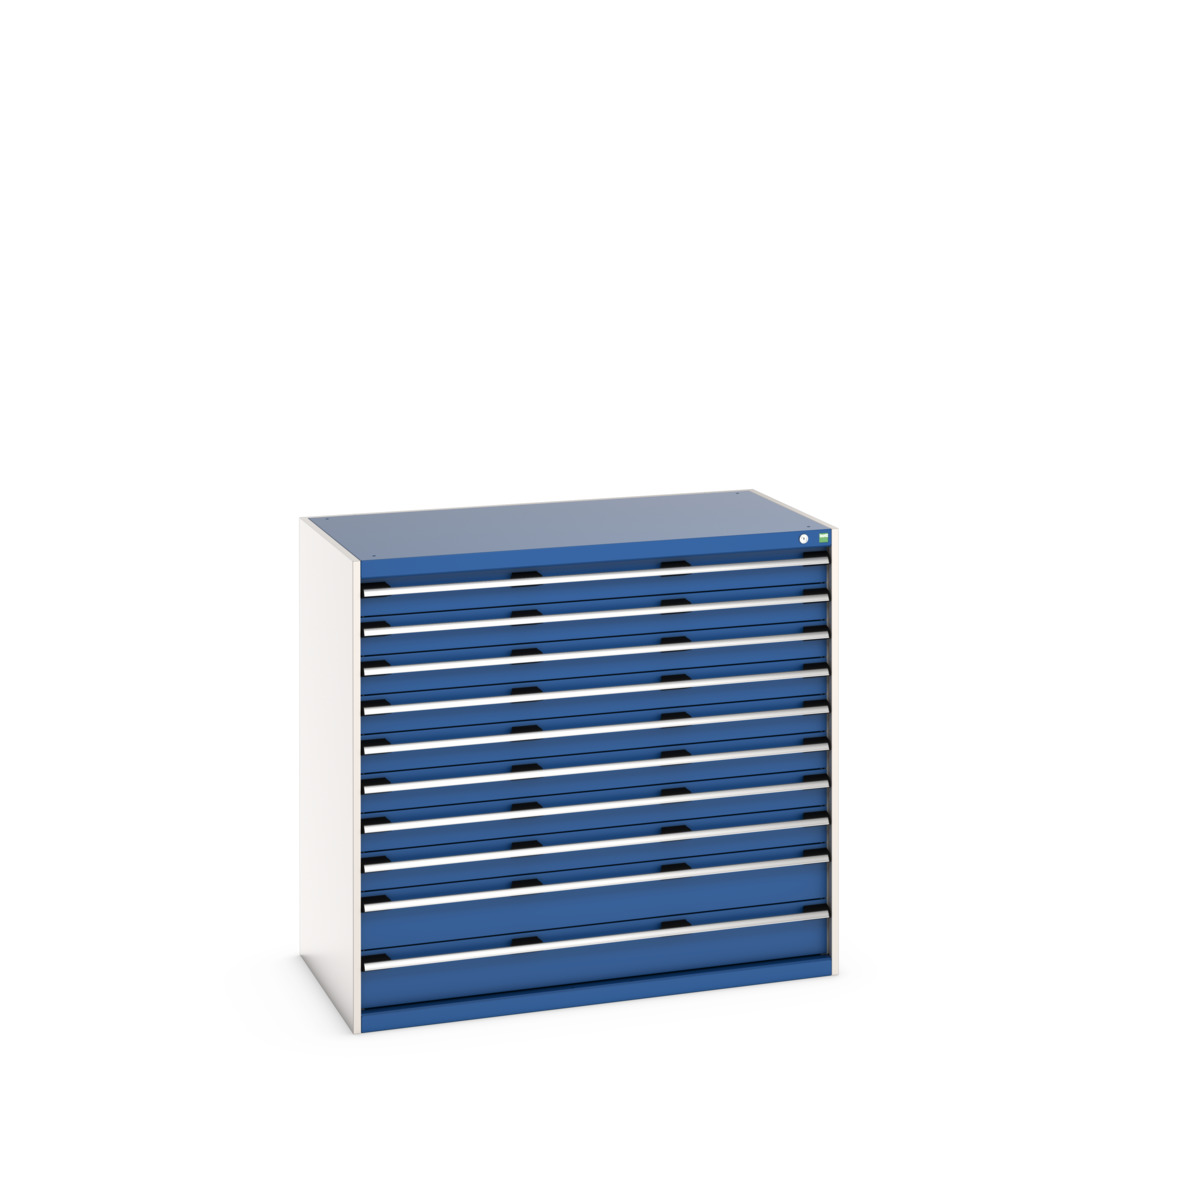 40030025.11V - cubio drawer cabinet